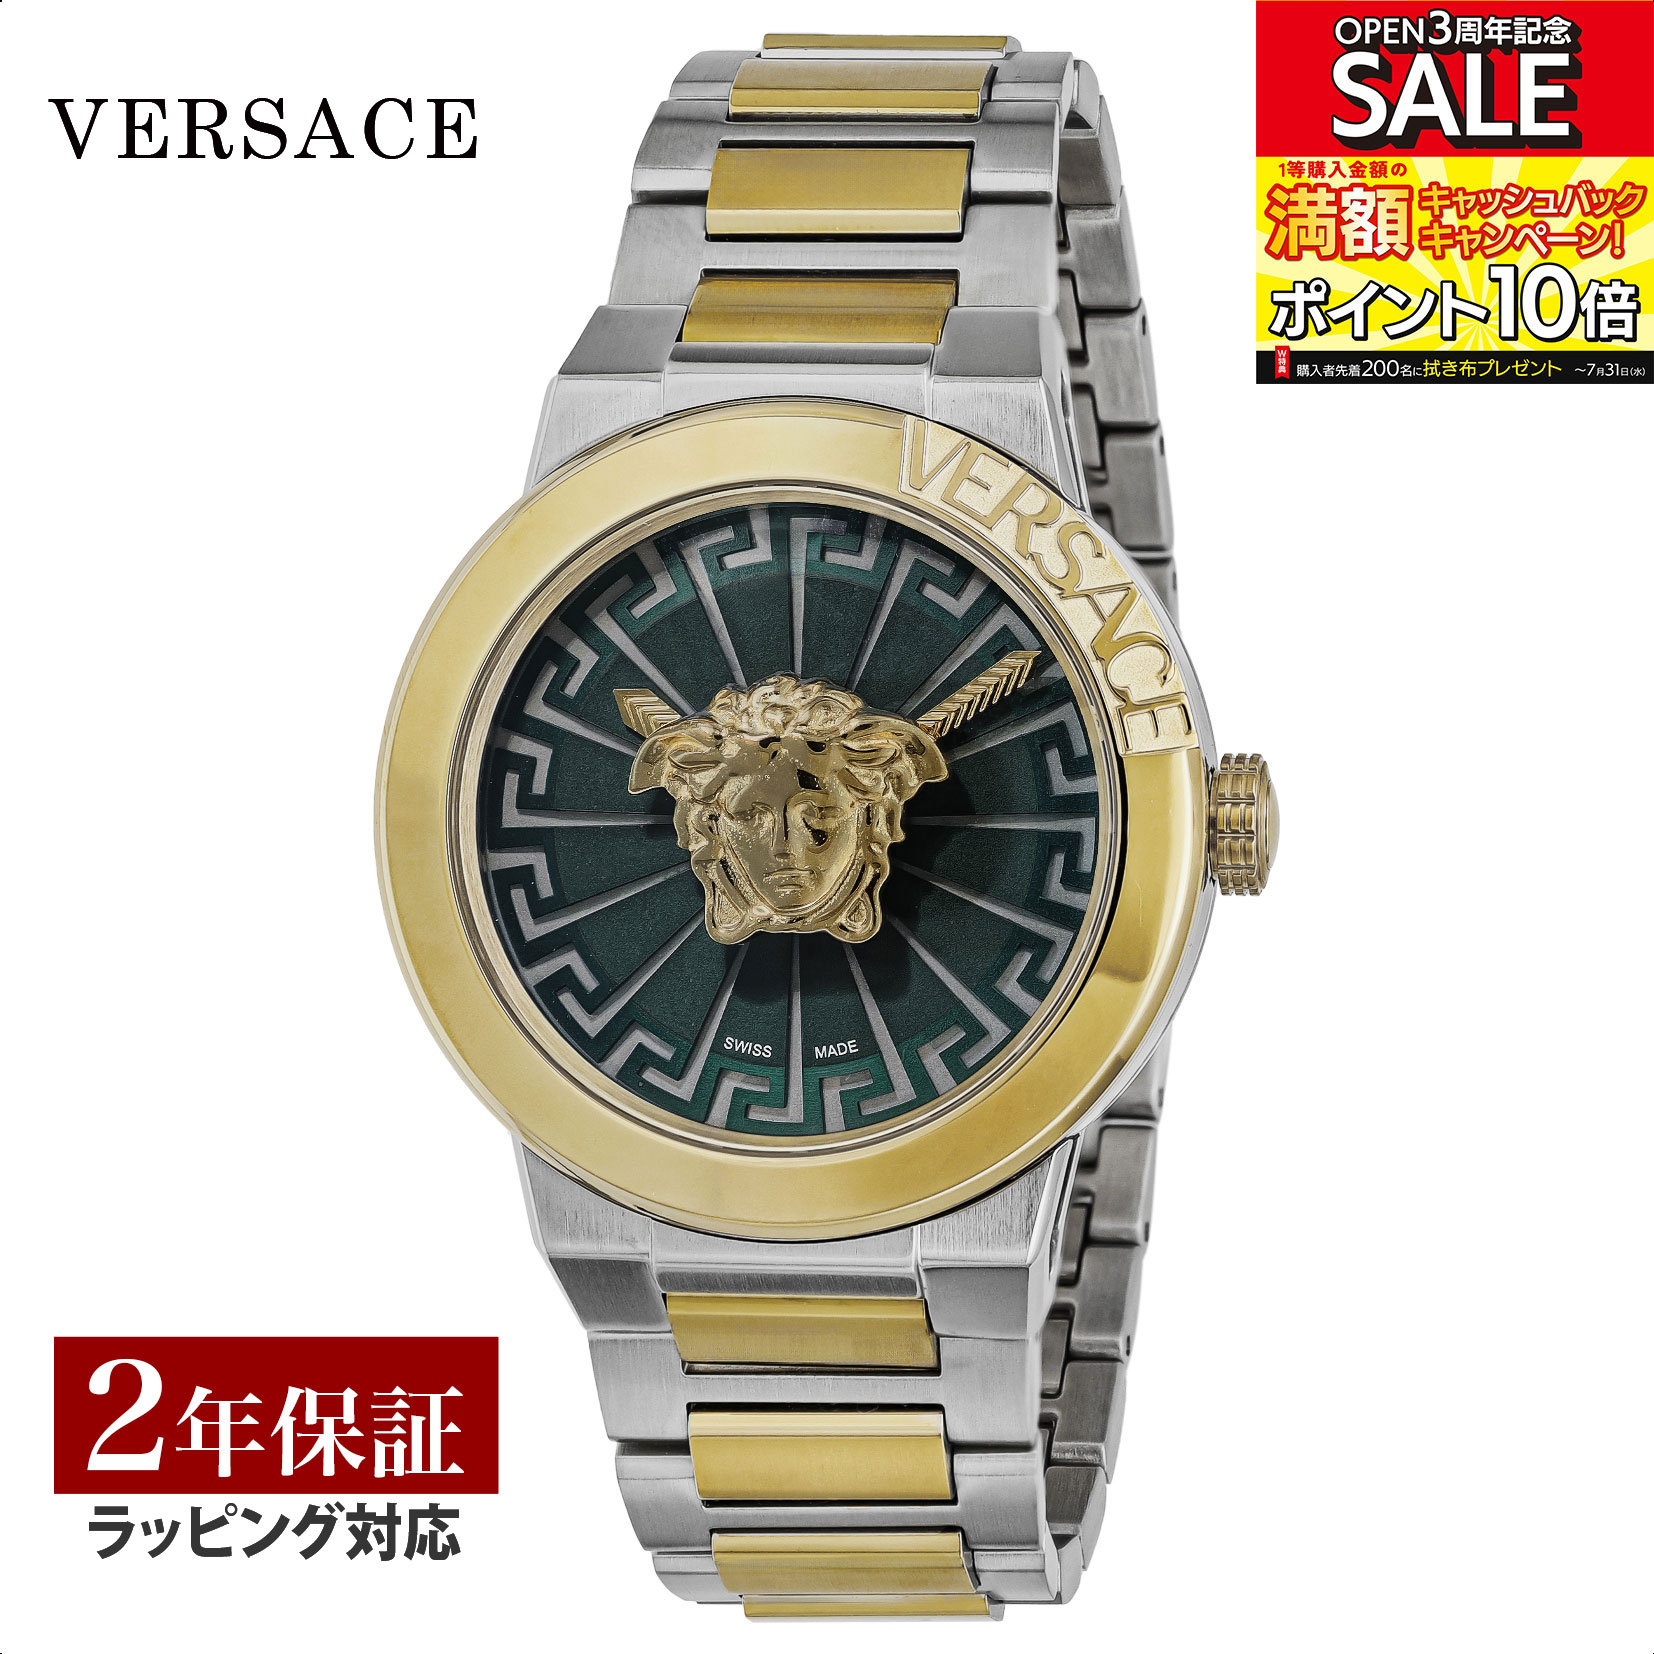 ヴェルサーチェ VERSACE メンズ 時計 メドゥーサ インフィニット Medusa Infinite クォーツ グリーン VE3F00422 腕時計 高級腕時計 ブランド